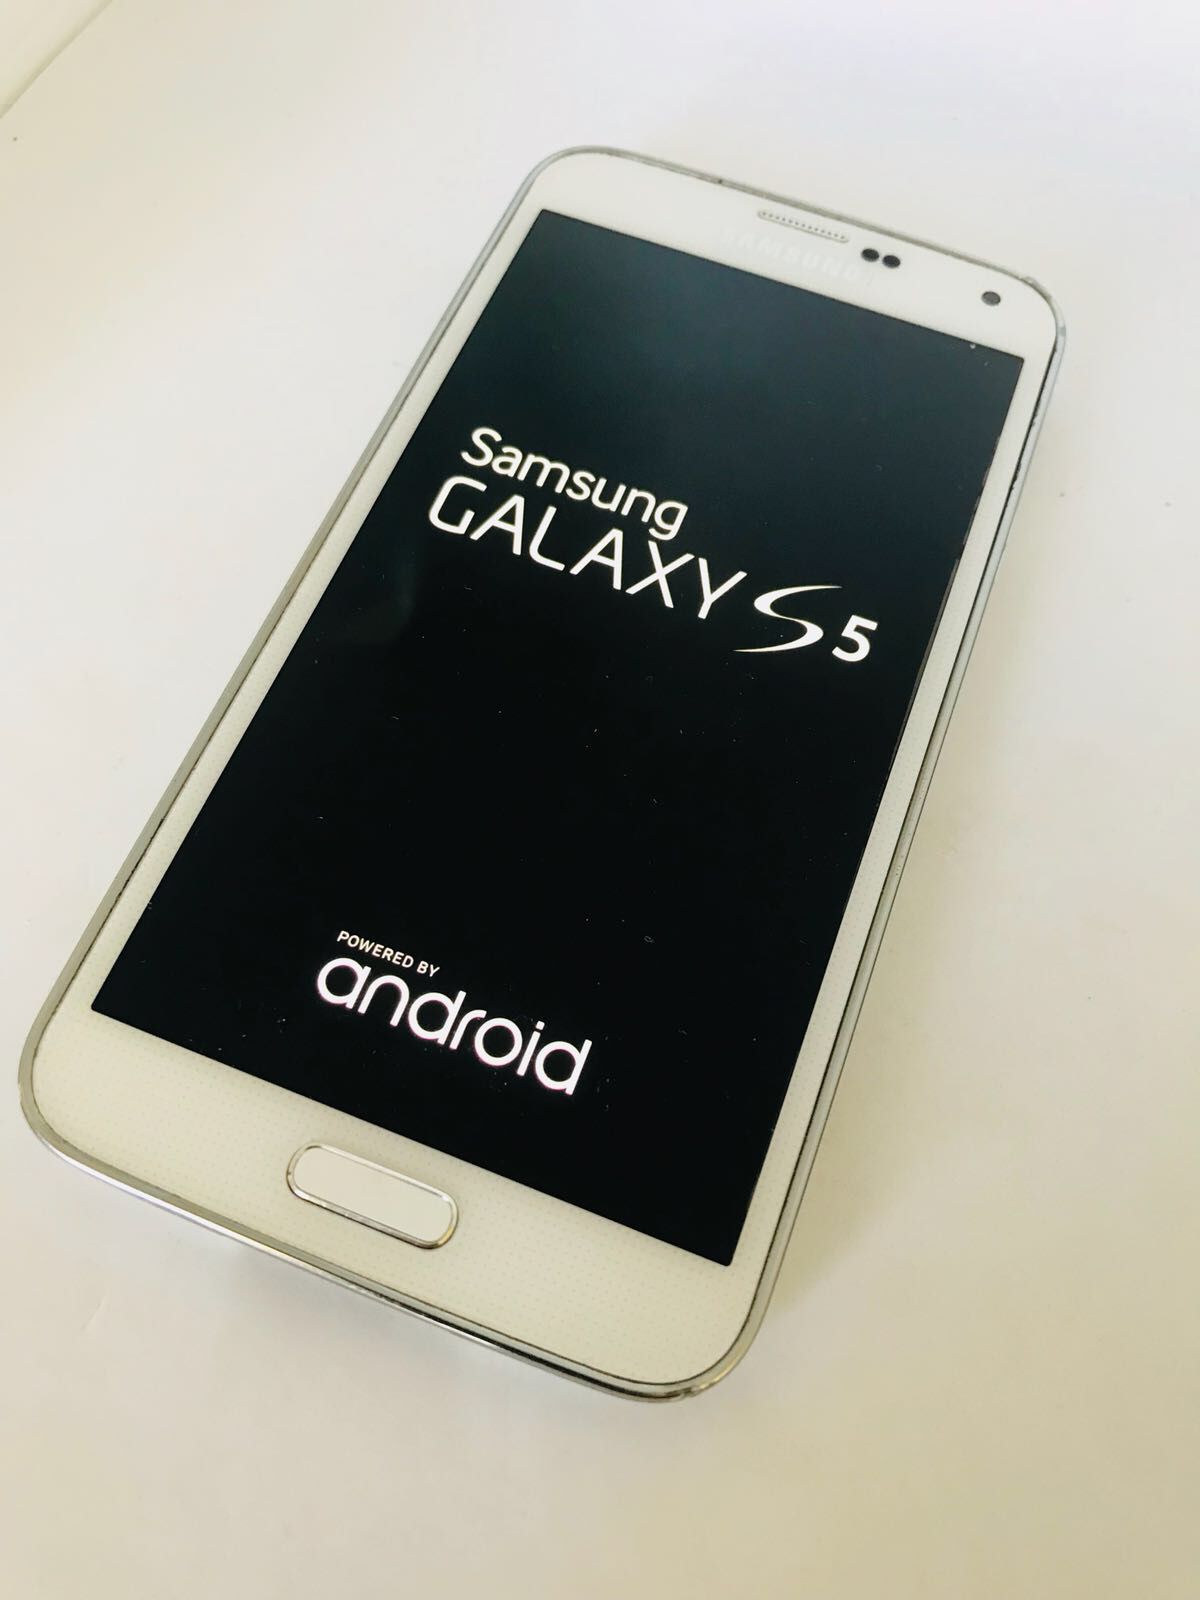 Samsung Galaxy S5 16Gb Unlocked